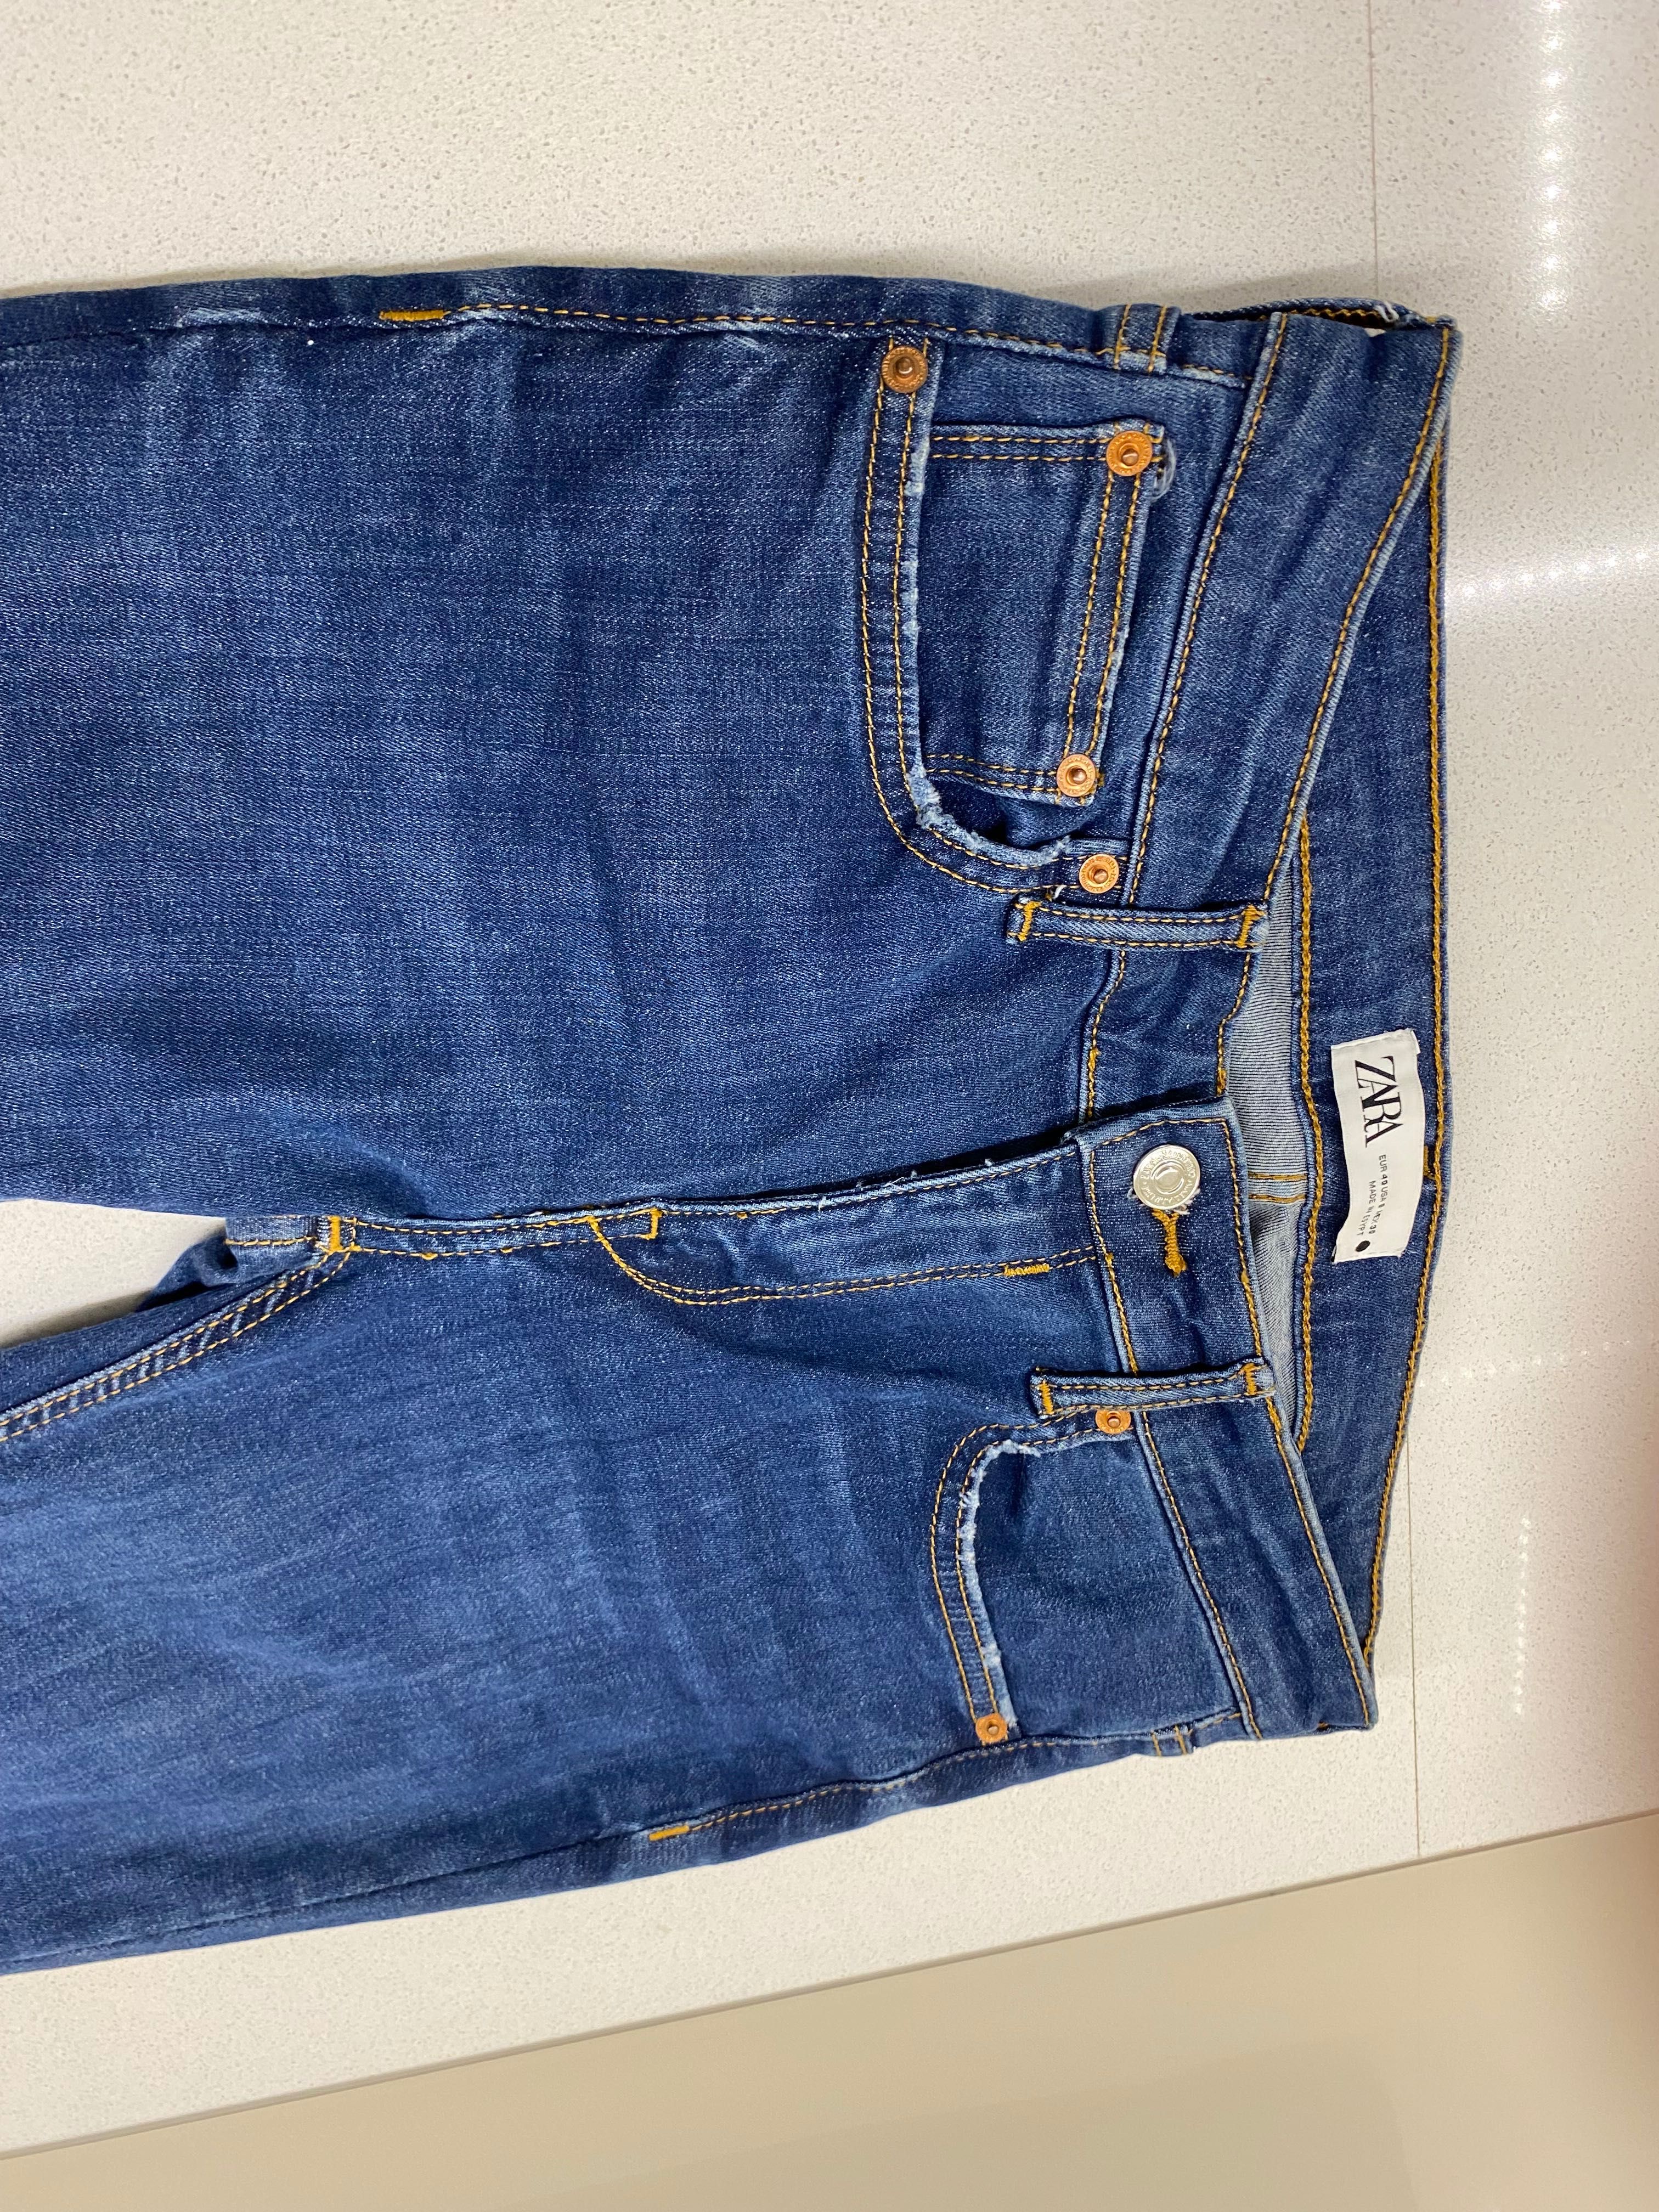 Spodnie jeansowe Zara 38 jak nowe